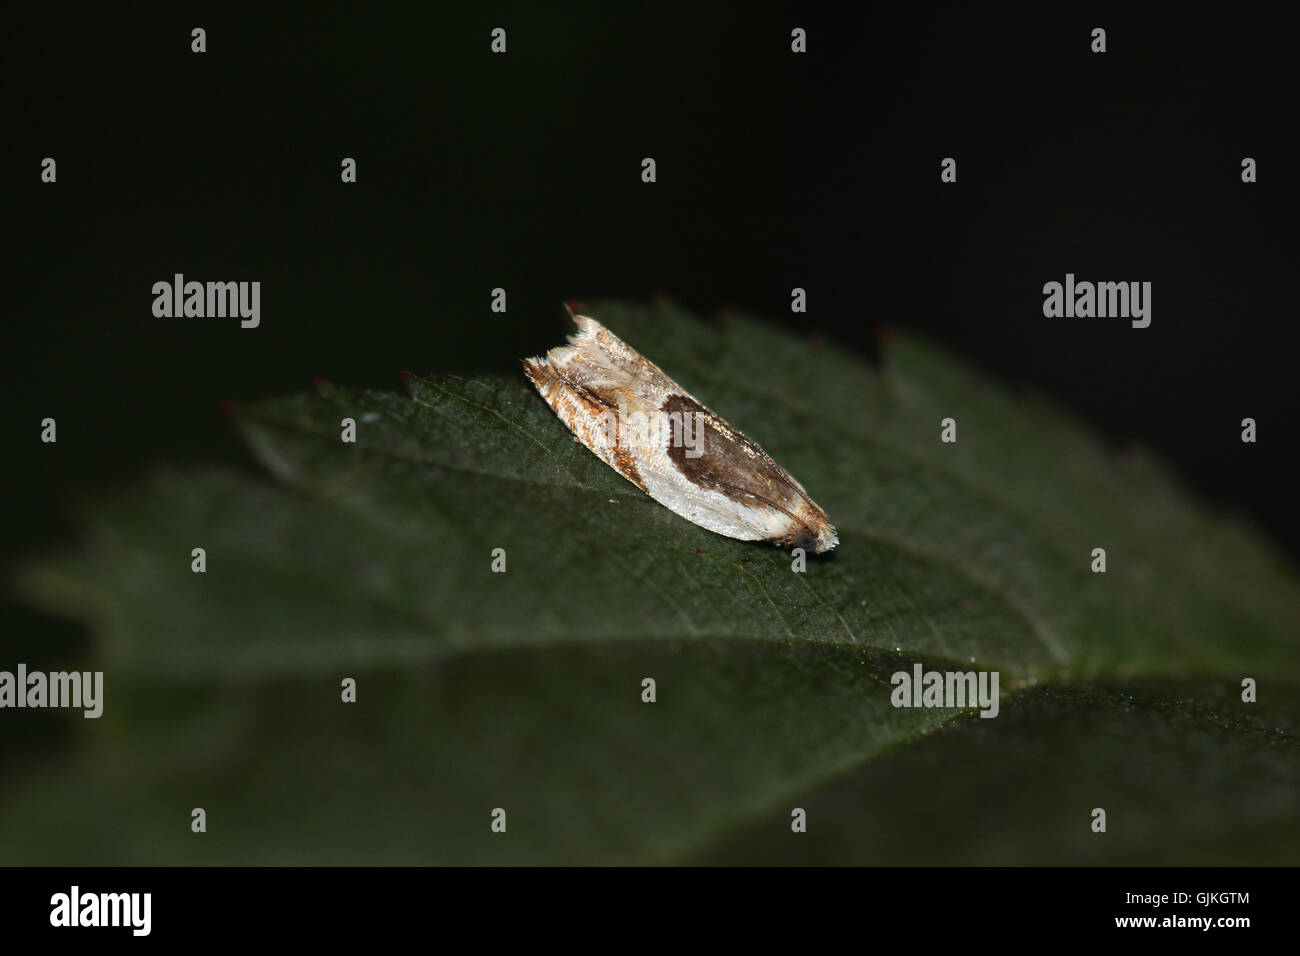 An Oak Leaffolder moth (Ancylis burgessiana) resting on a ninebark leaf (Physocarpus opulifolius), Indiana, United States Stock Photo